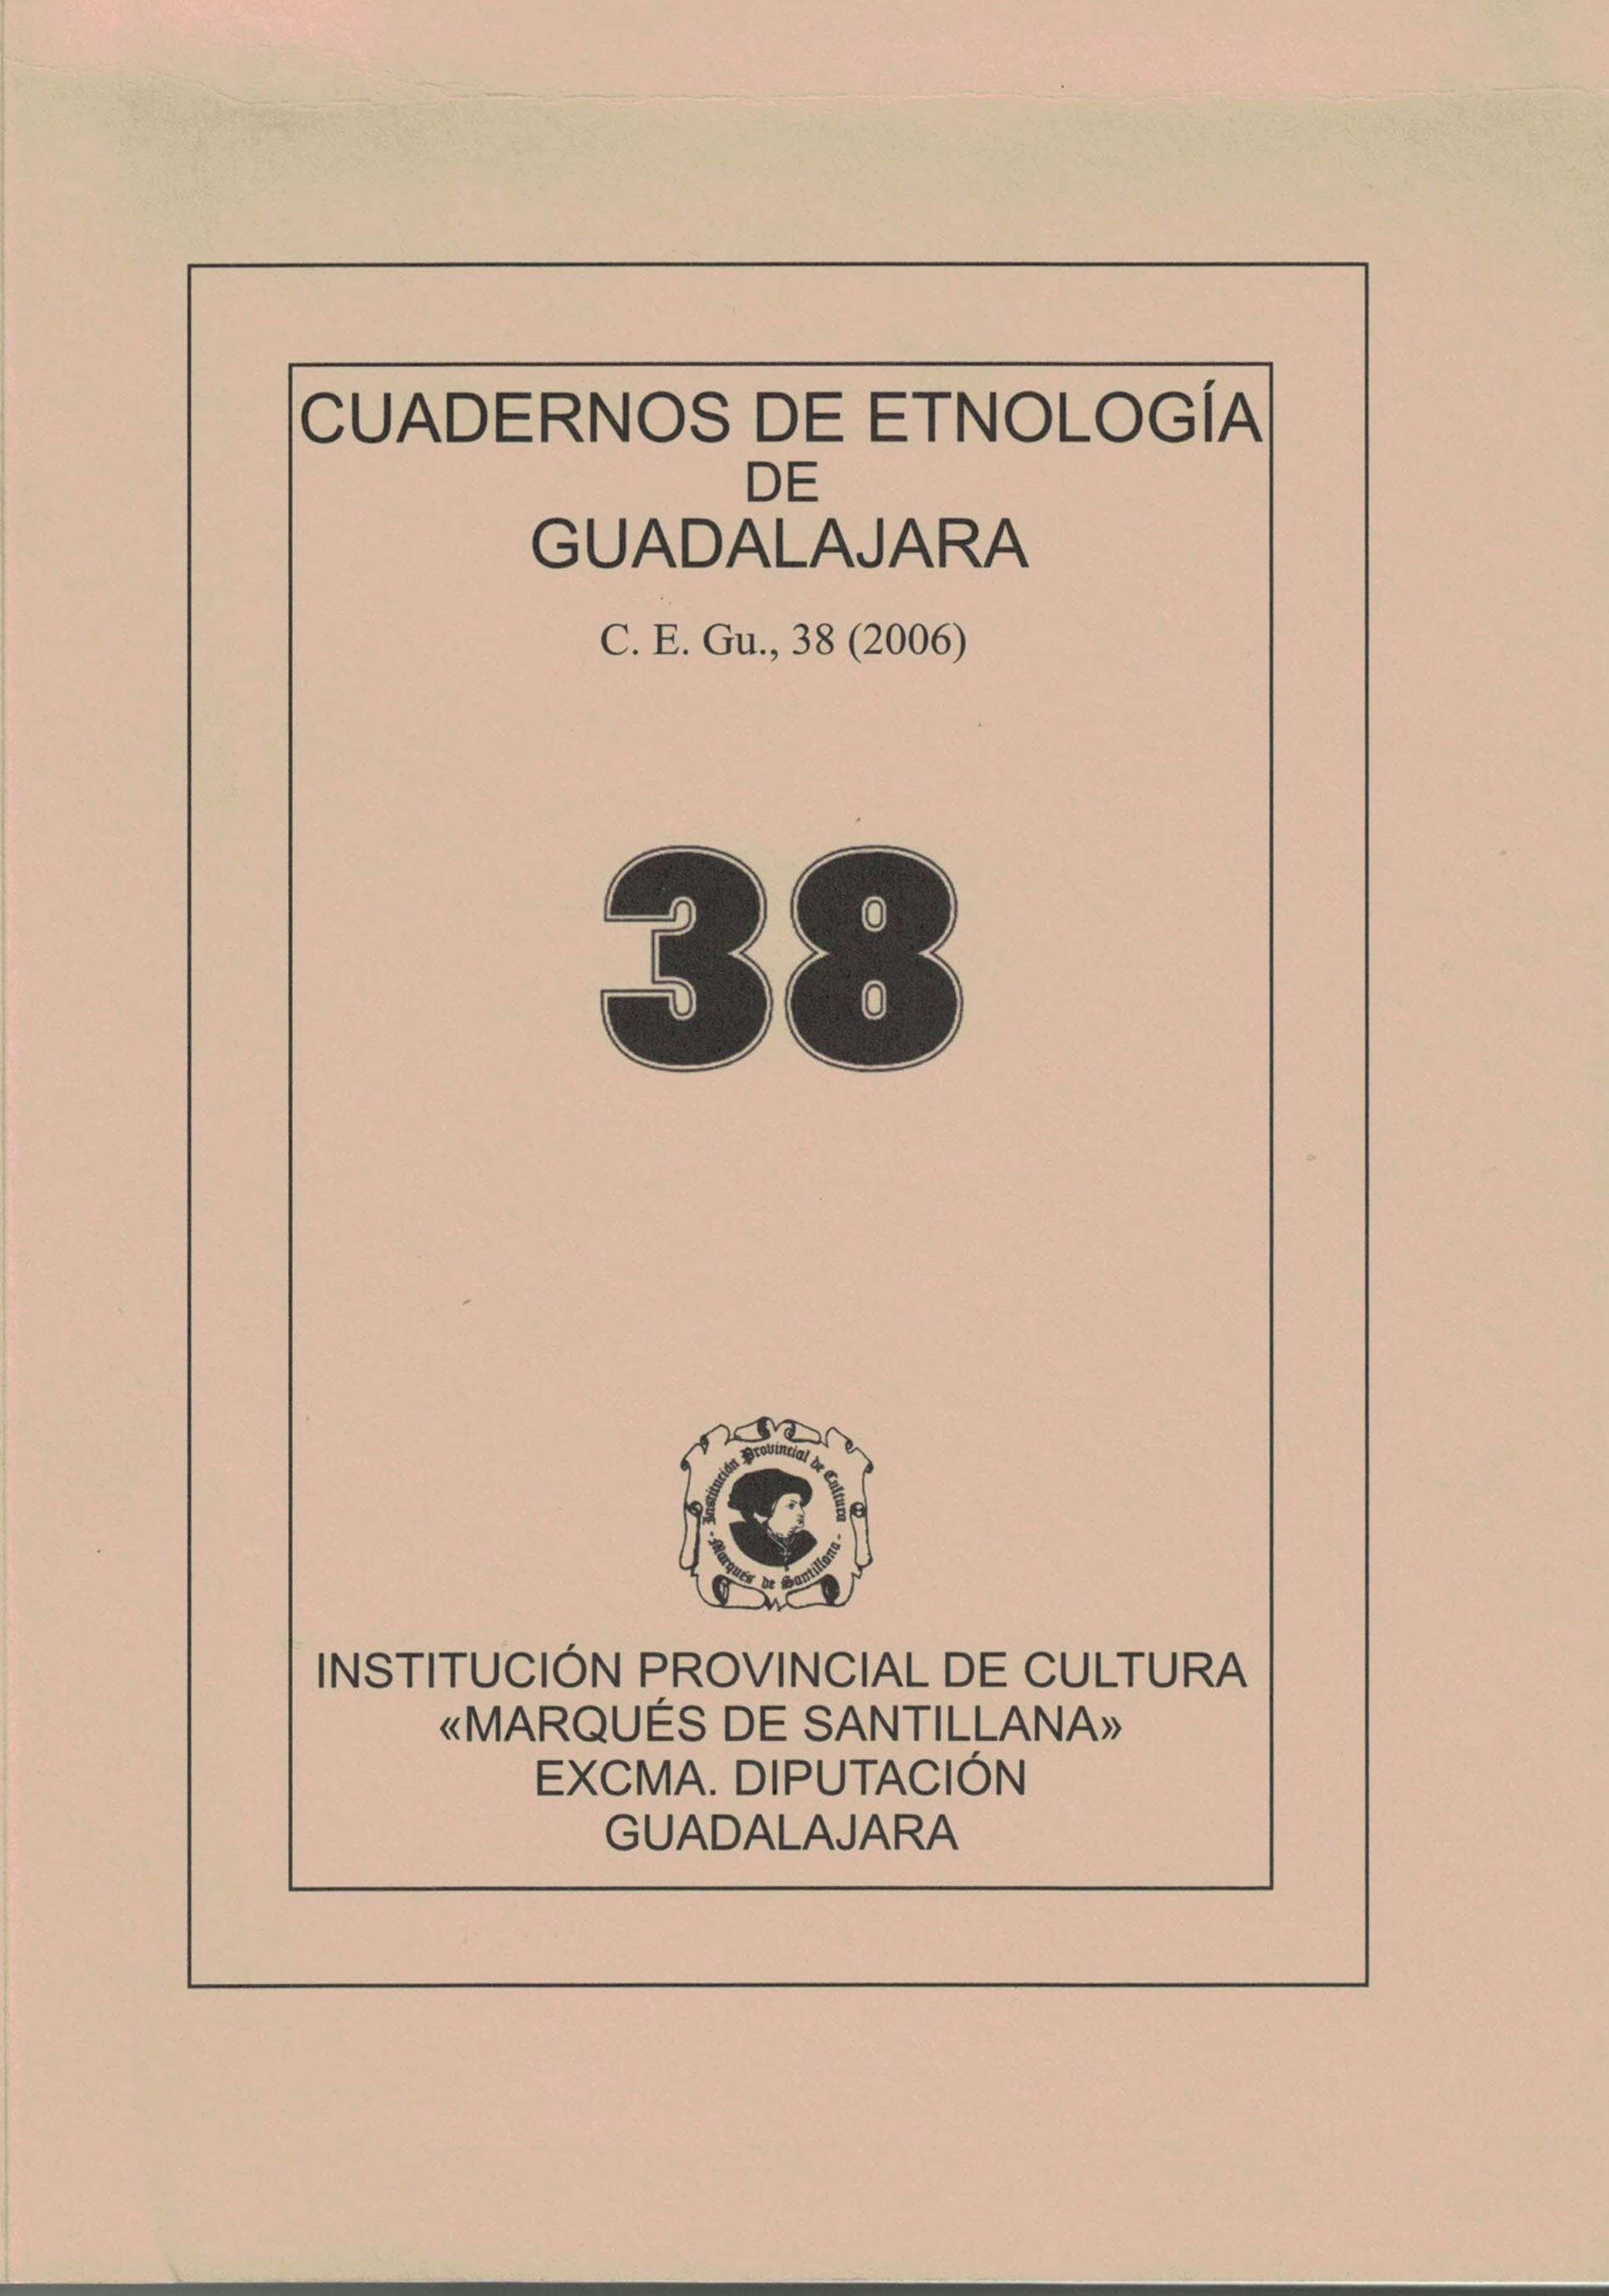 Cuadernos de Etnologia de Guadalajara 38